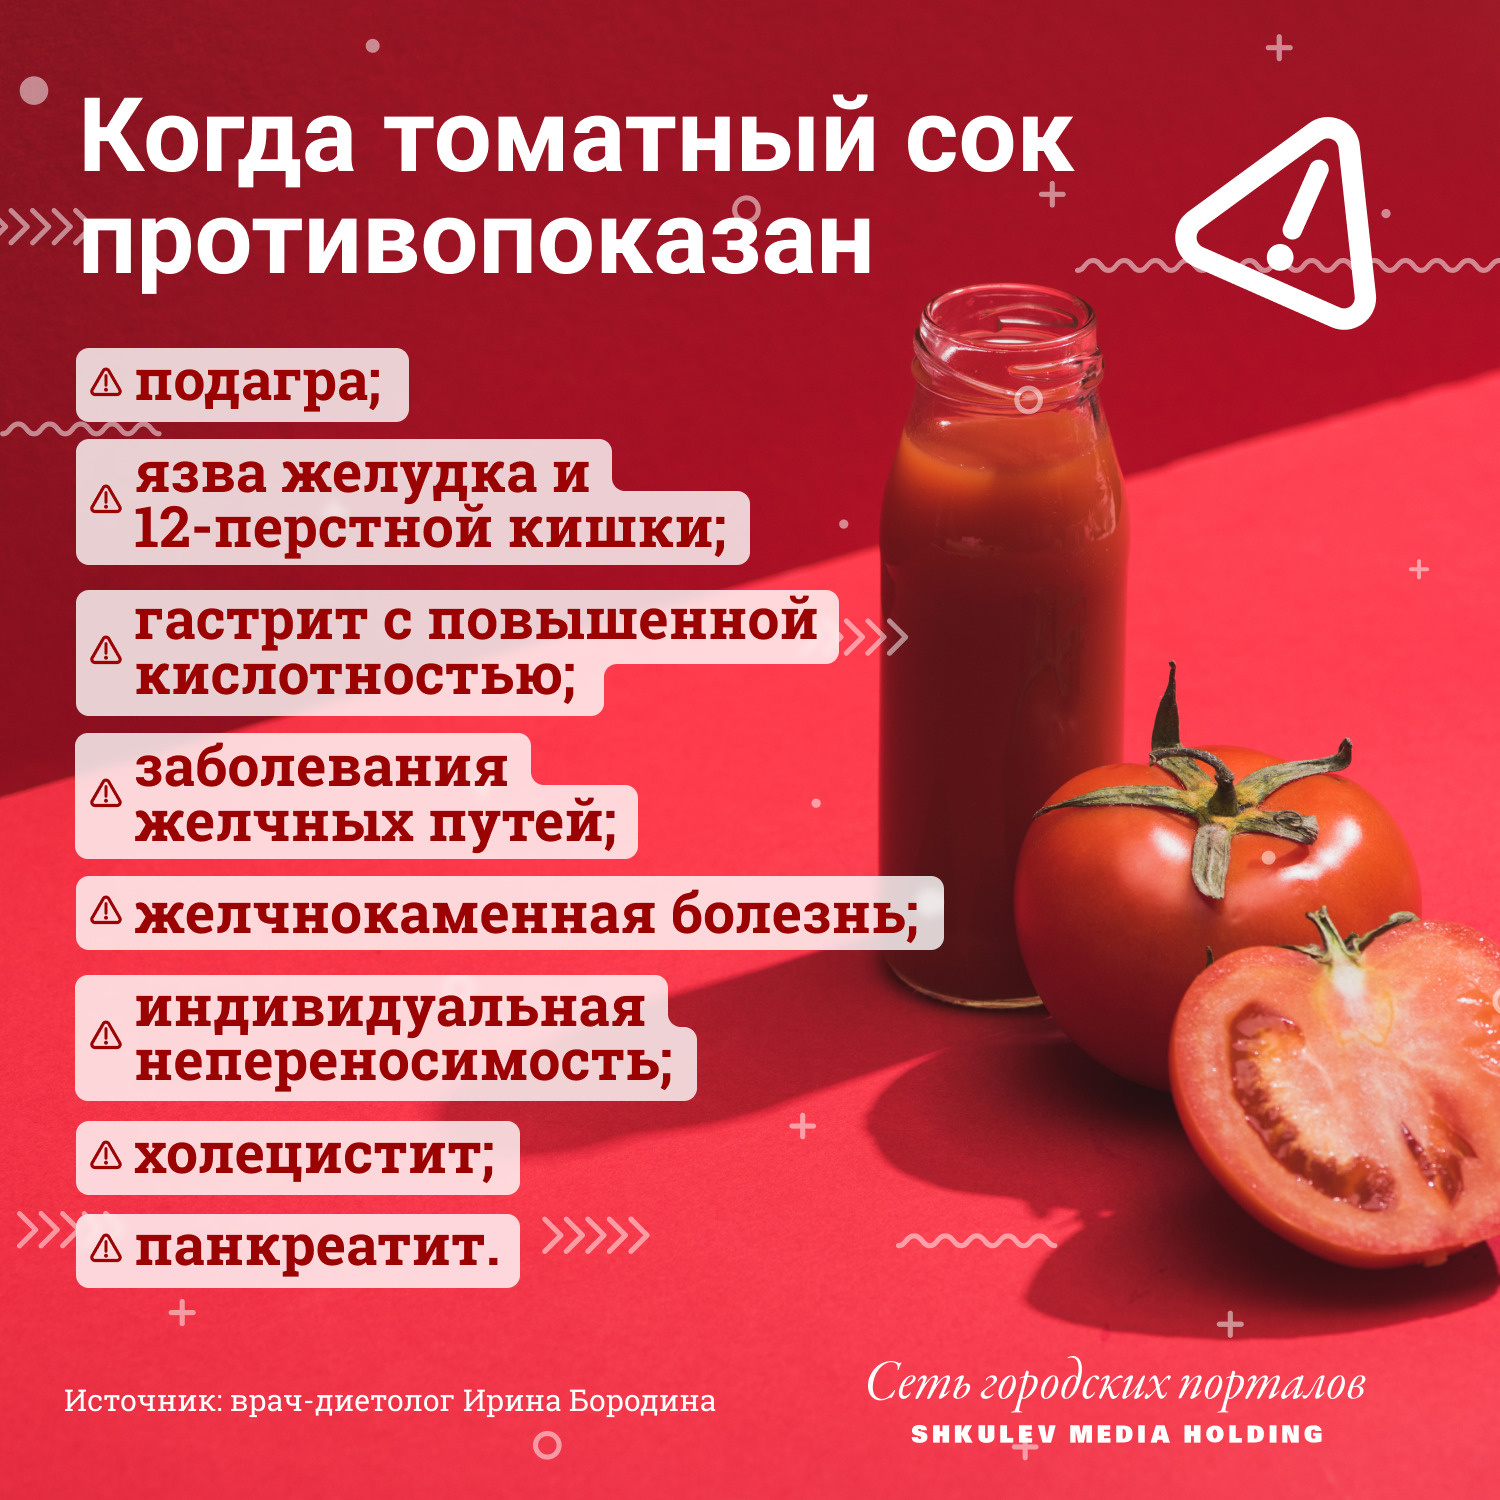 Противопоказания томатного сока